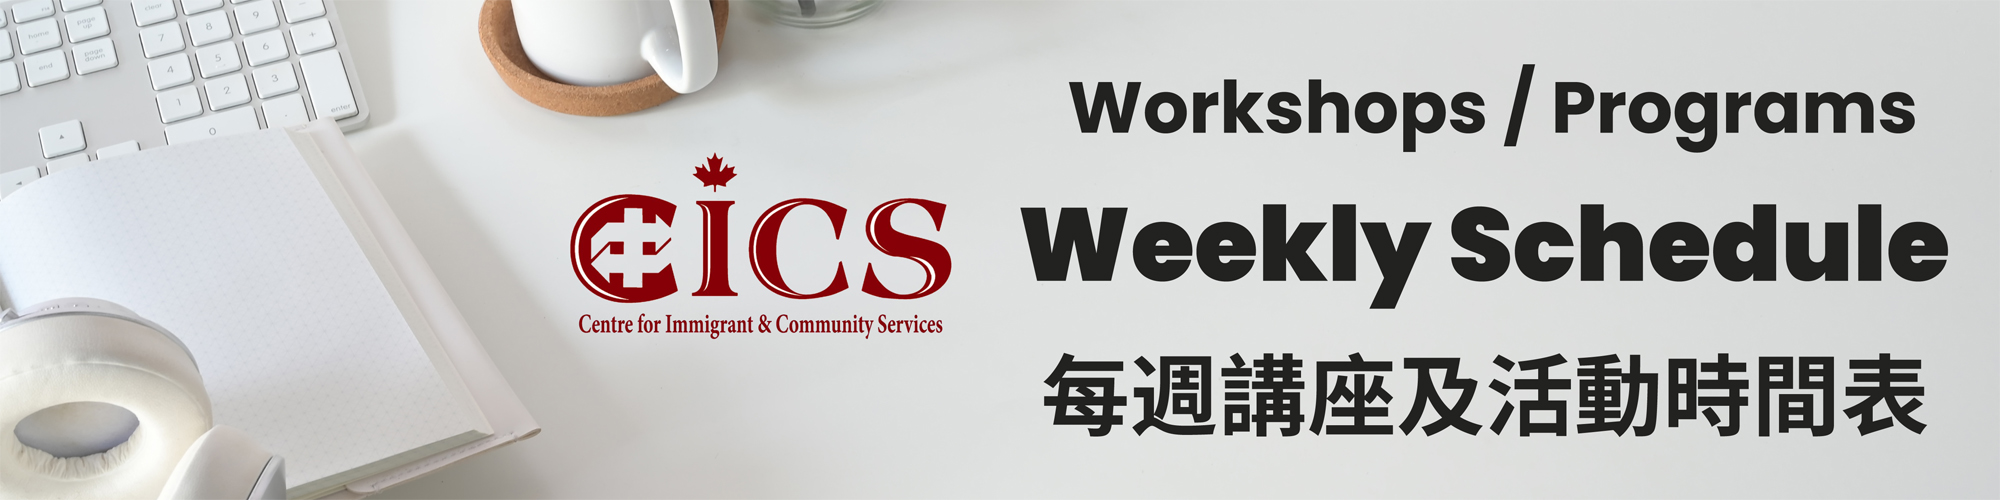 CICS Workshop/Program Weekly Schedule